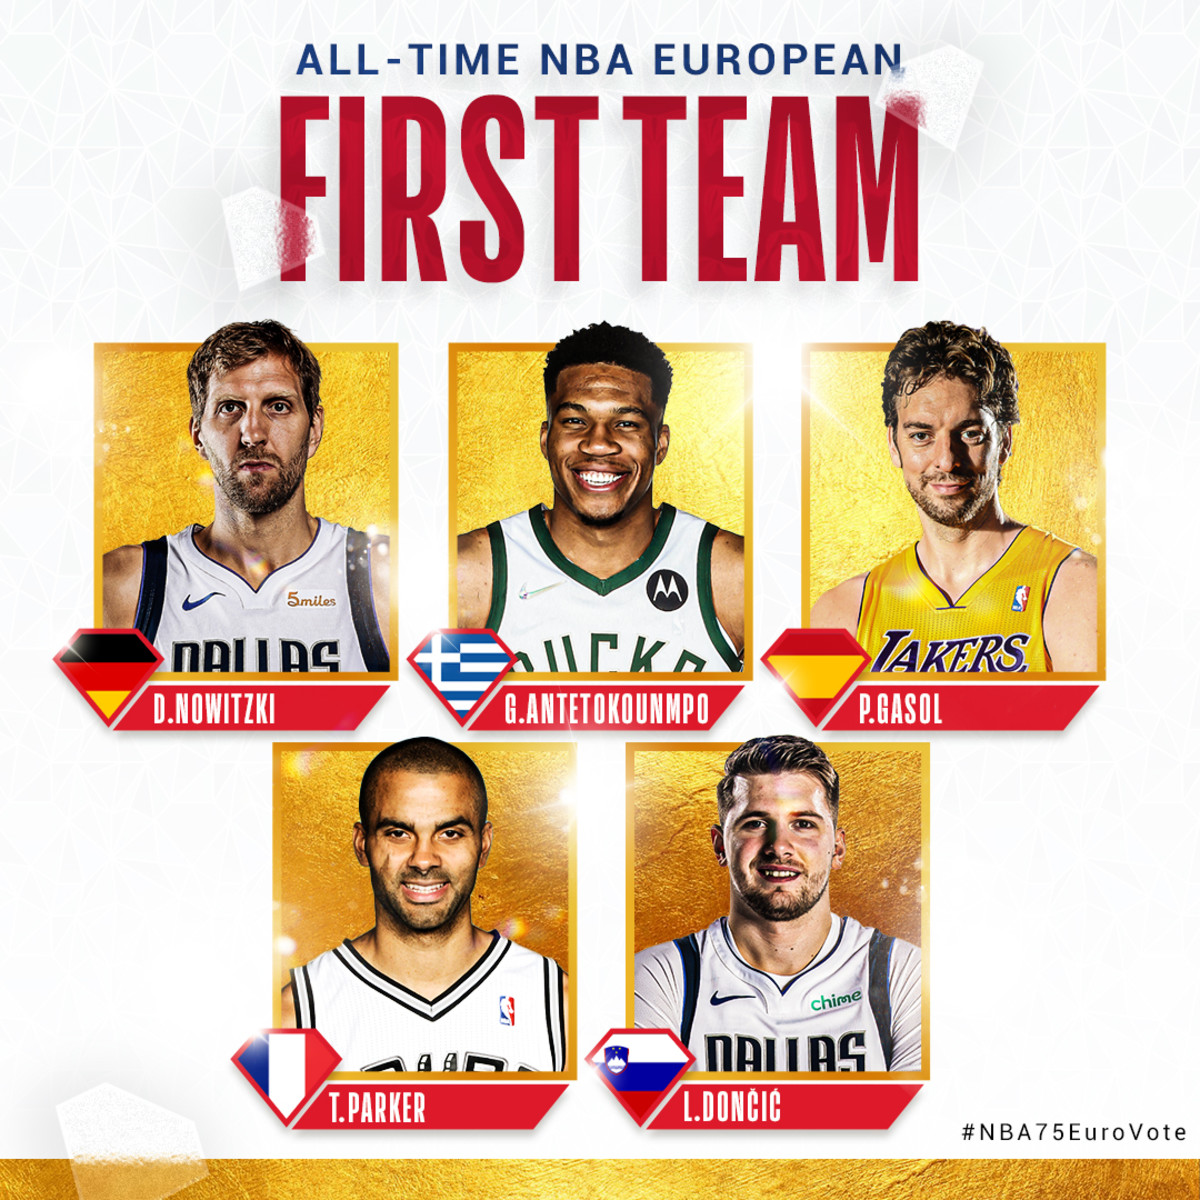 All-Time NBA European First Team